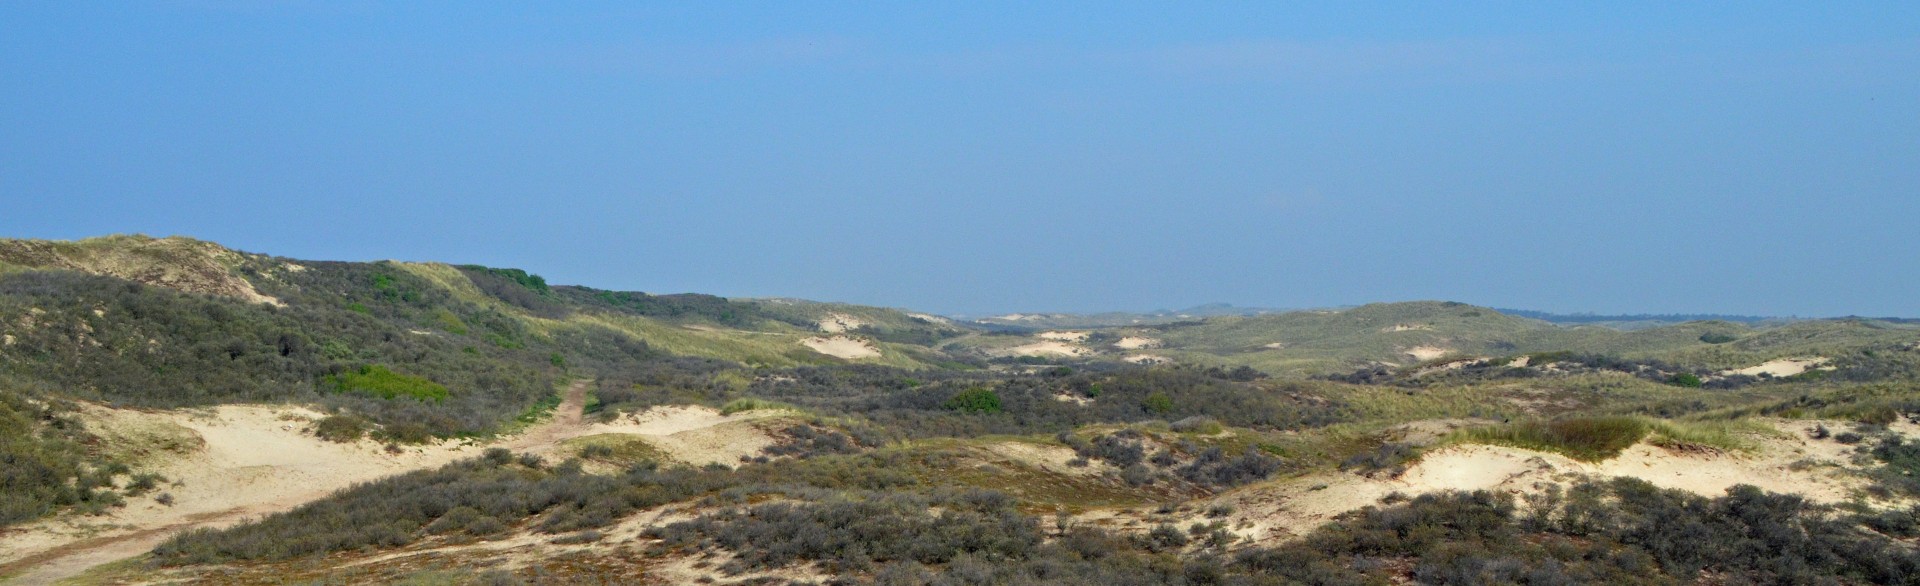 Castricum dunes on the North Sea